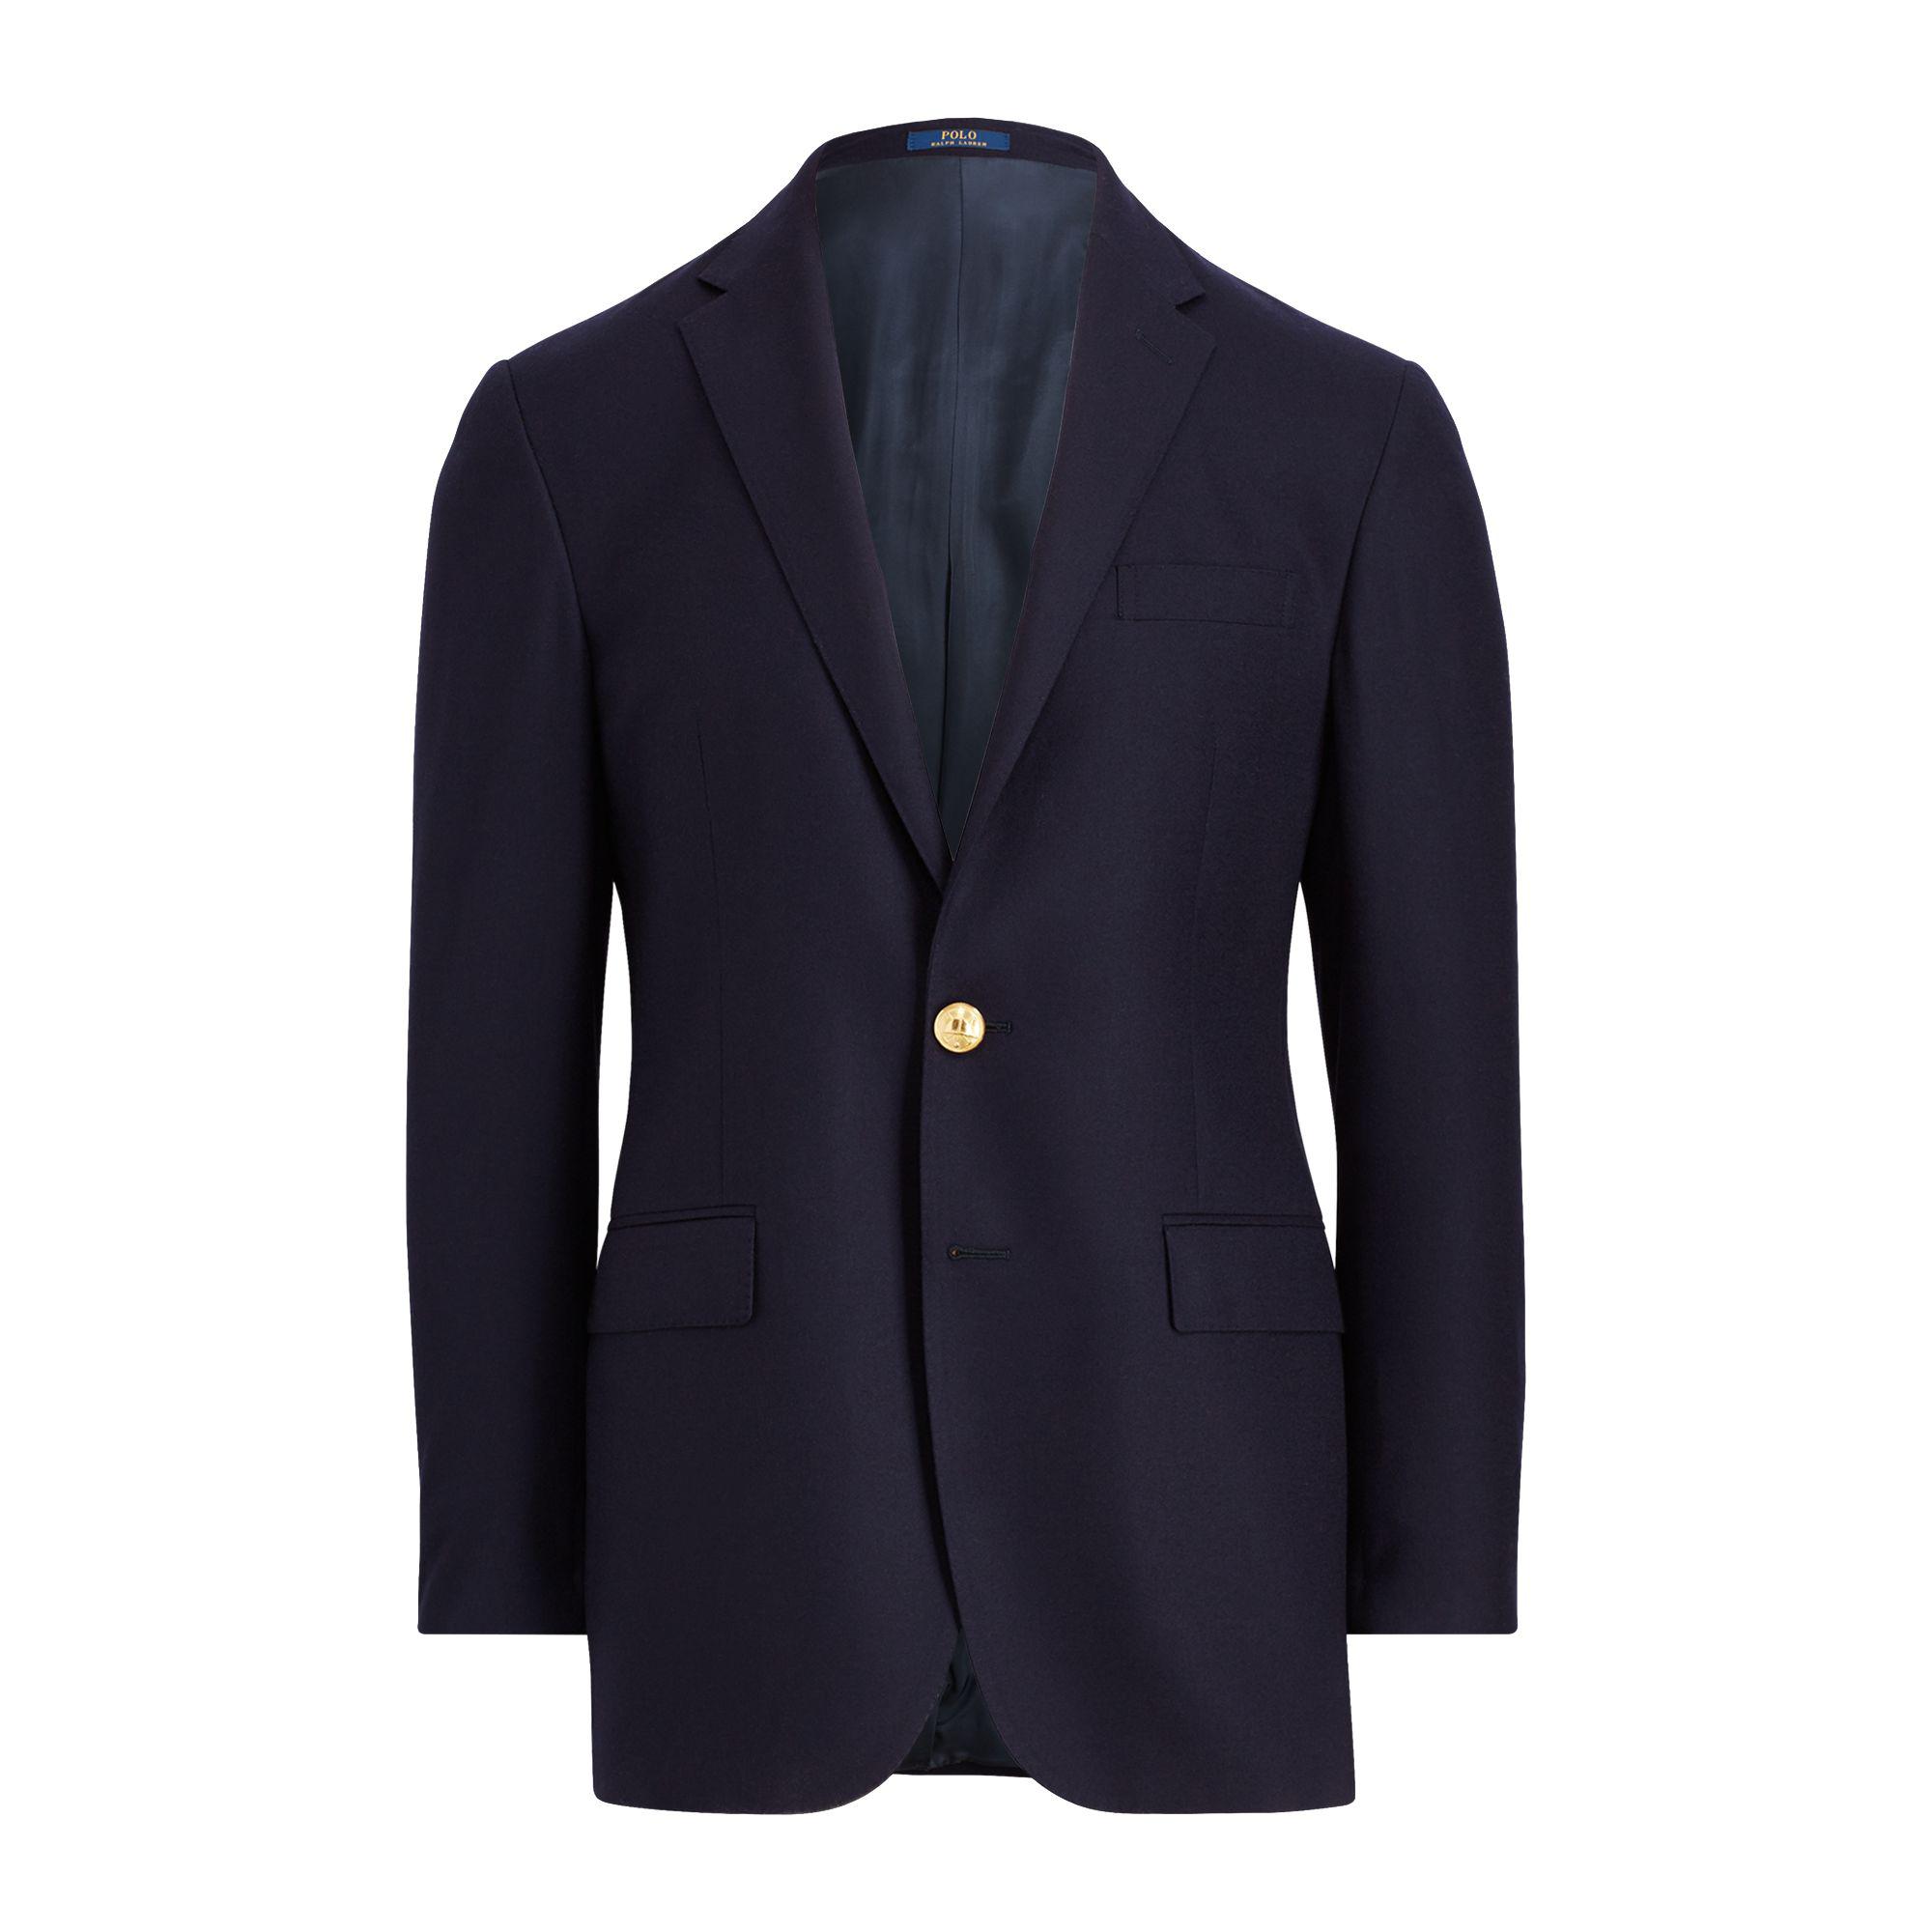 Polo Ralph Lauren Wool Polo I Doeskin Blazer in Navy (Blue) for Men - Lyst